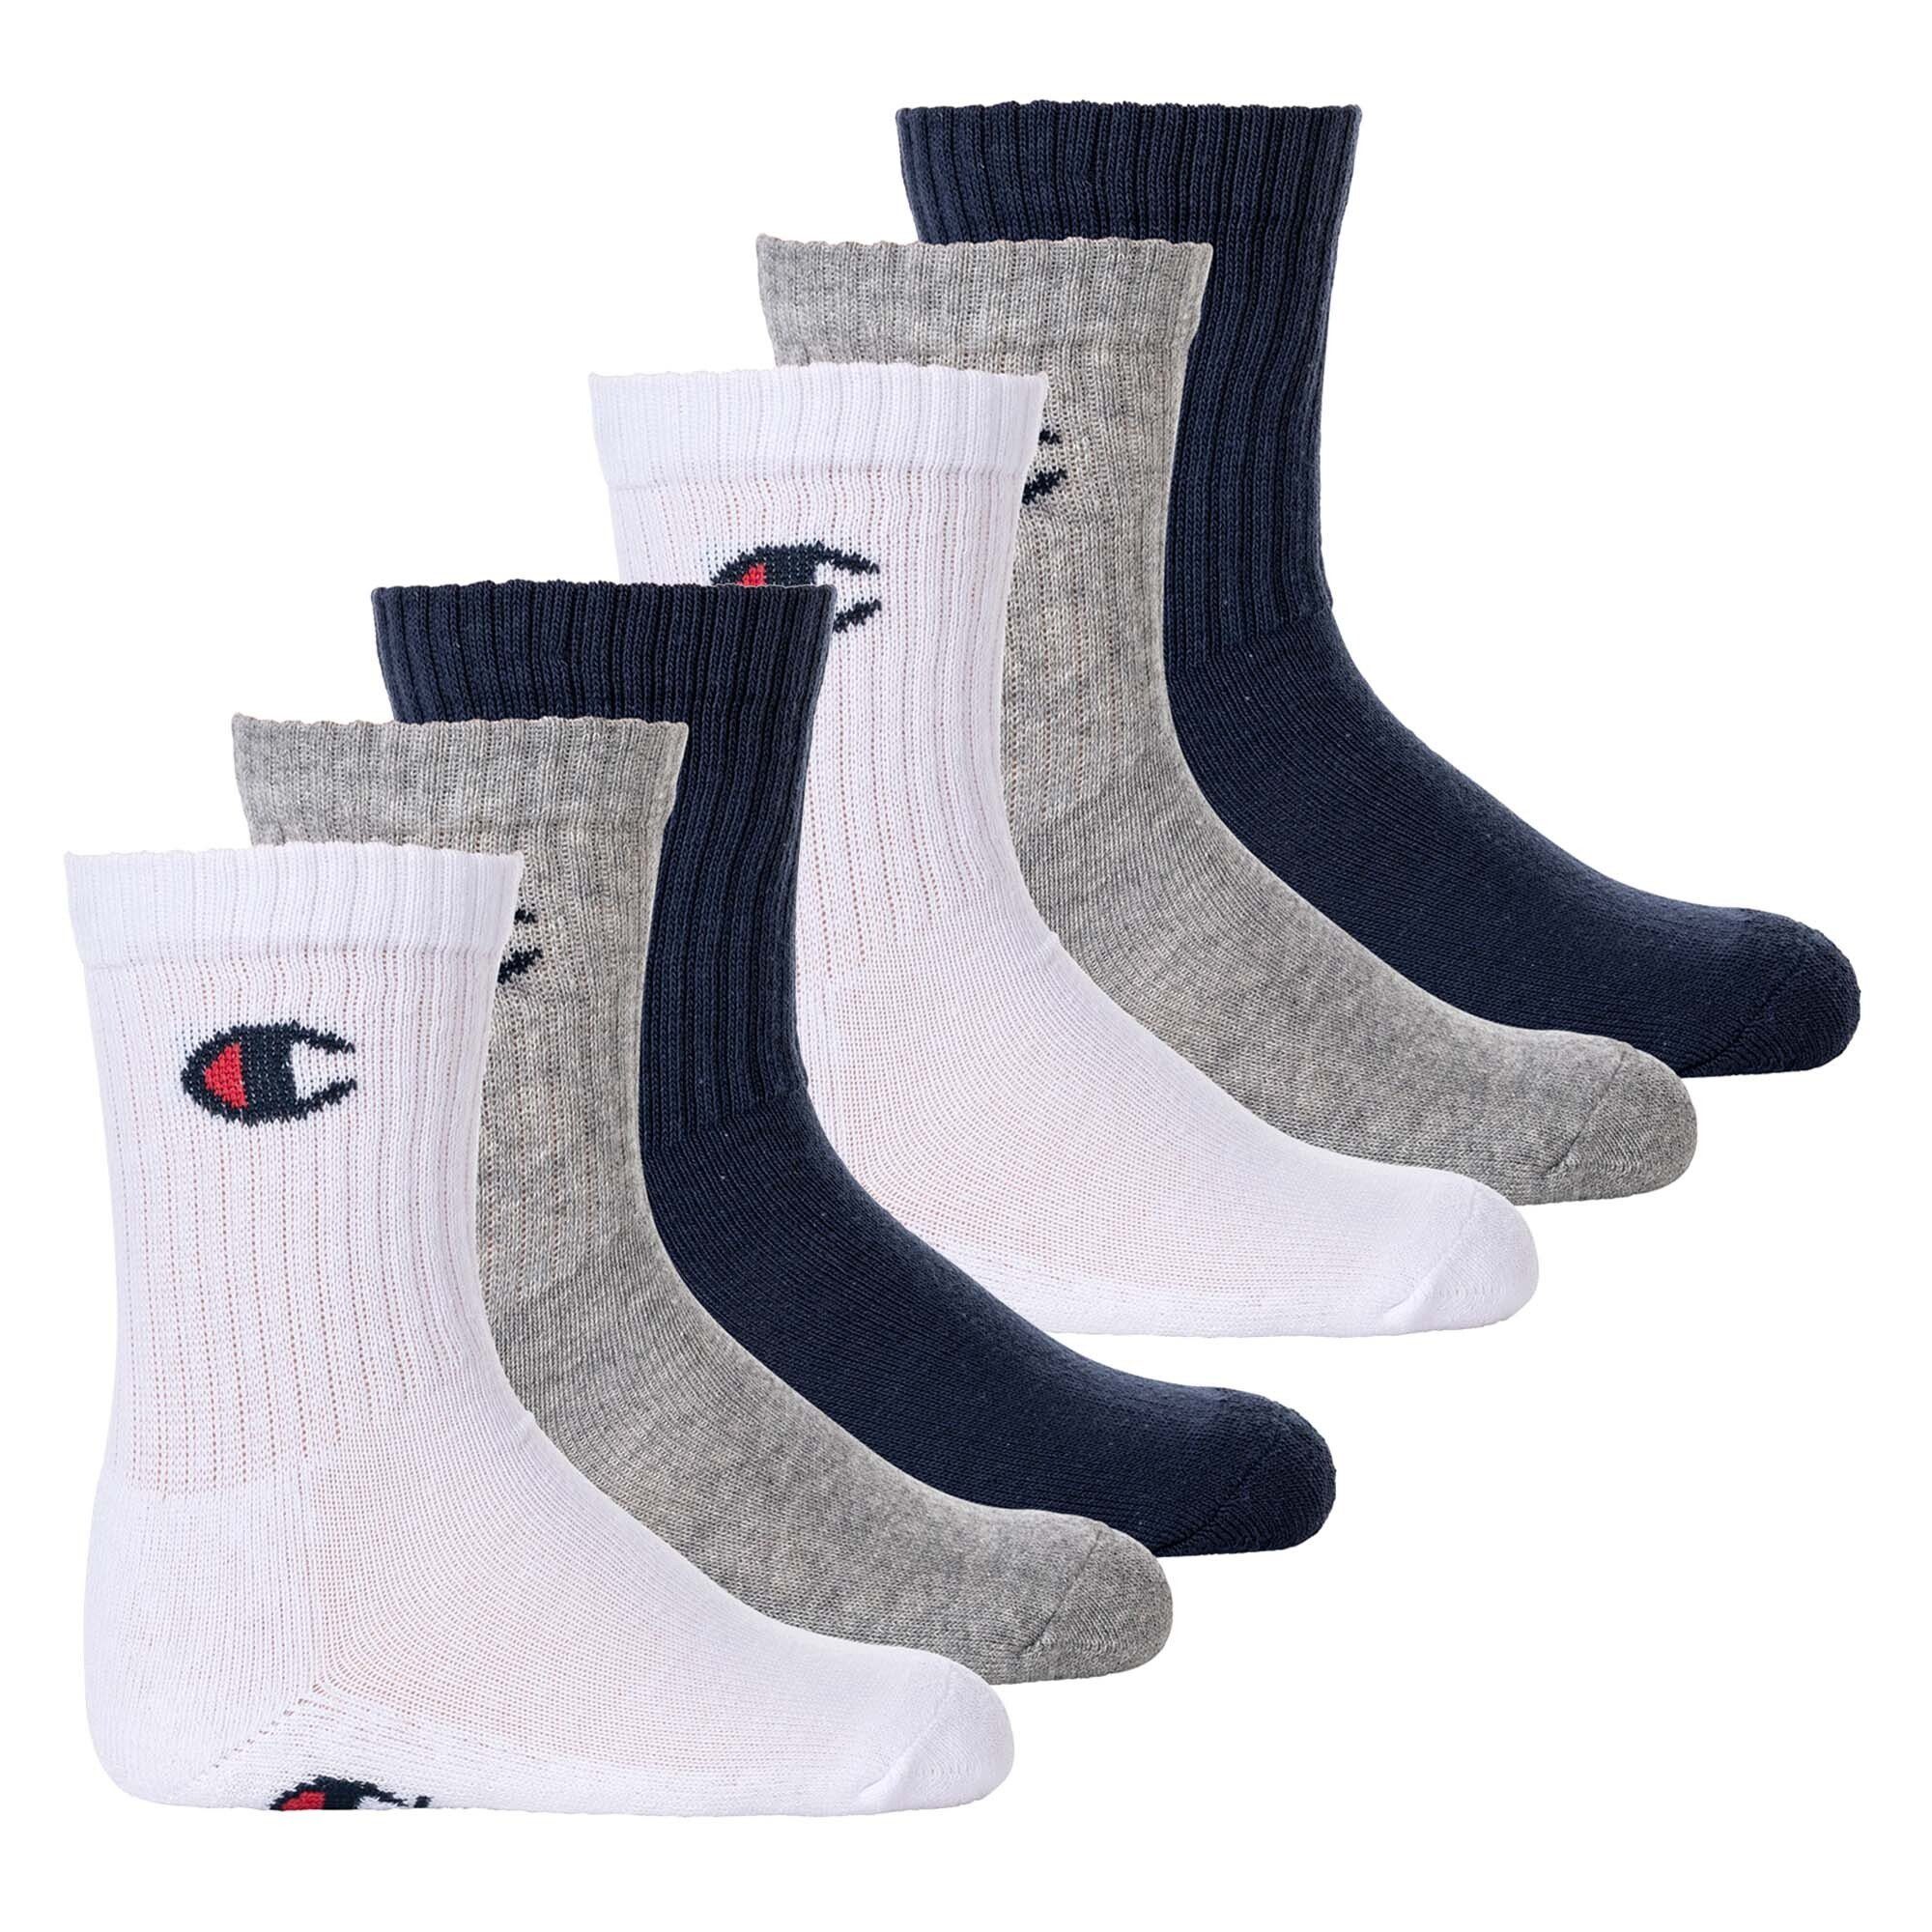 Champion Freizeitsocken Kinder Socken, 6er Pack- Crew Socken, einfarbig Blau/Weiß/Grau